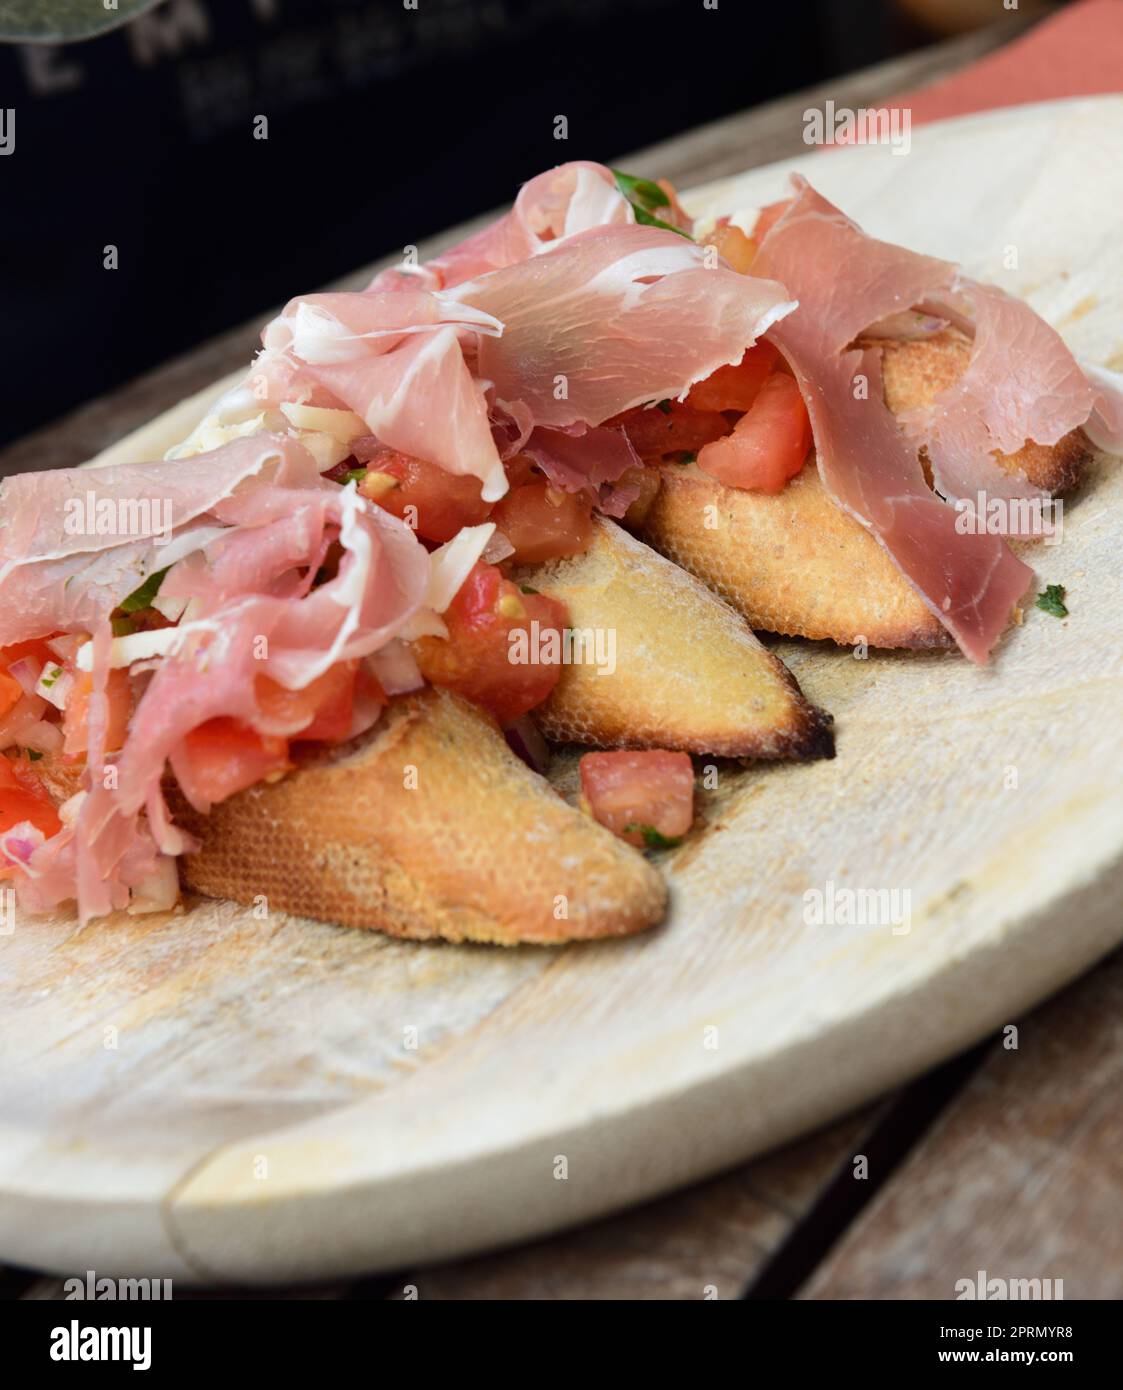 Bruschetta with tomatoes and garlic and ham Stock Photo